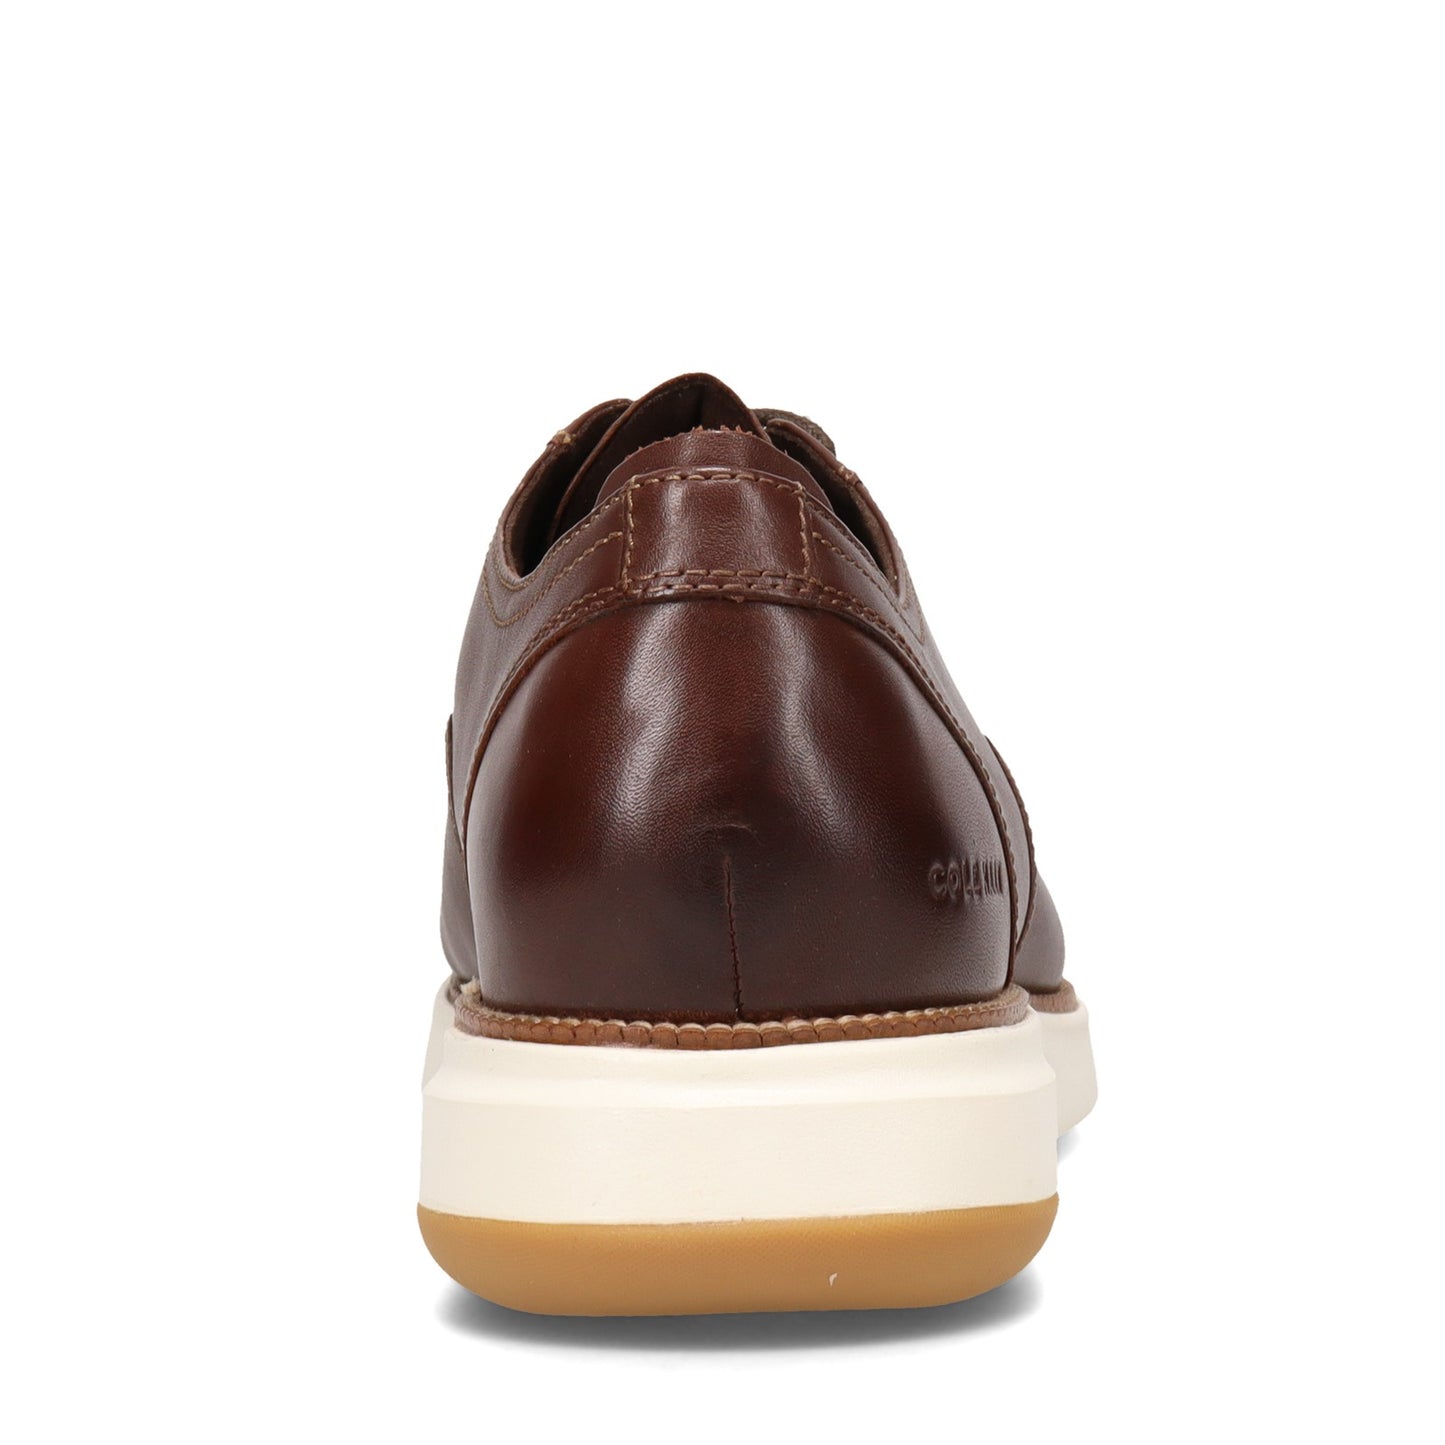 Peltz Shoes  Men's Cole Haan Grand Atlantic Oxford CHESTNUT C34853